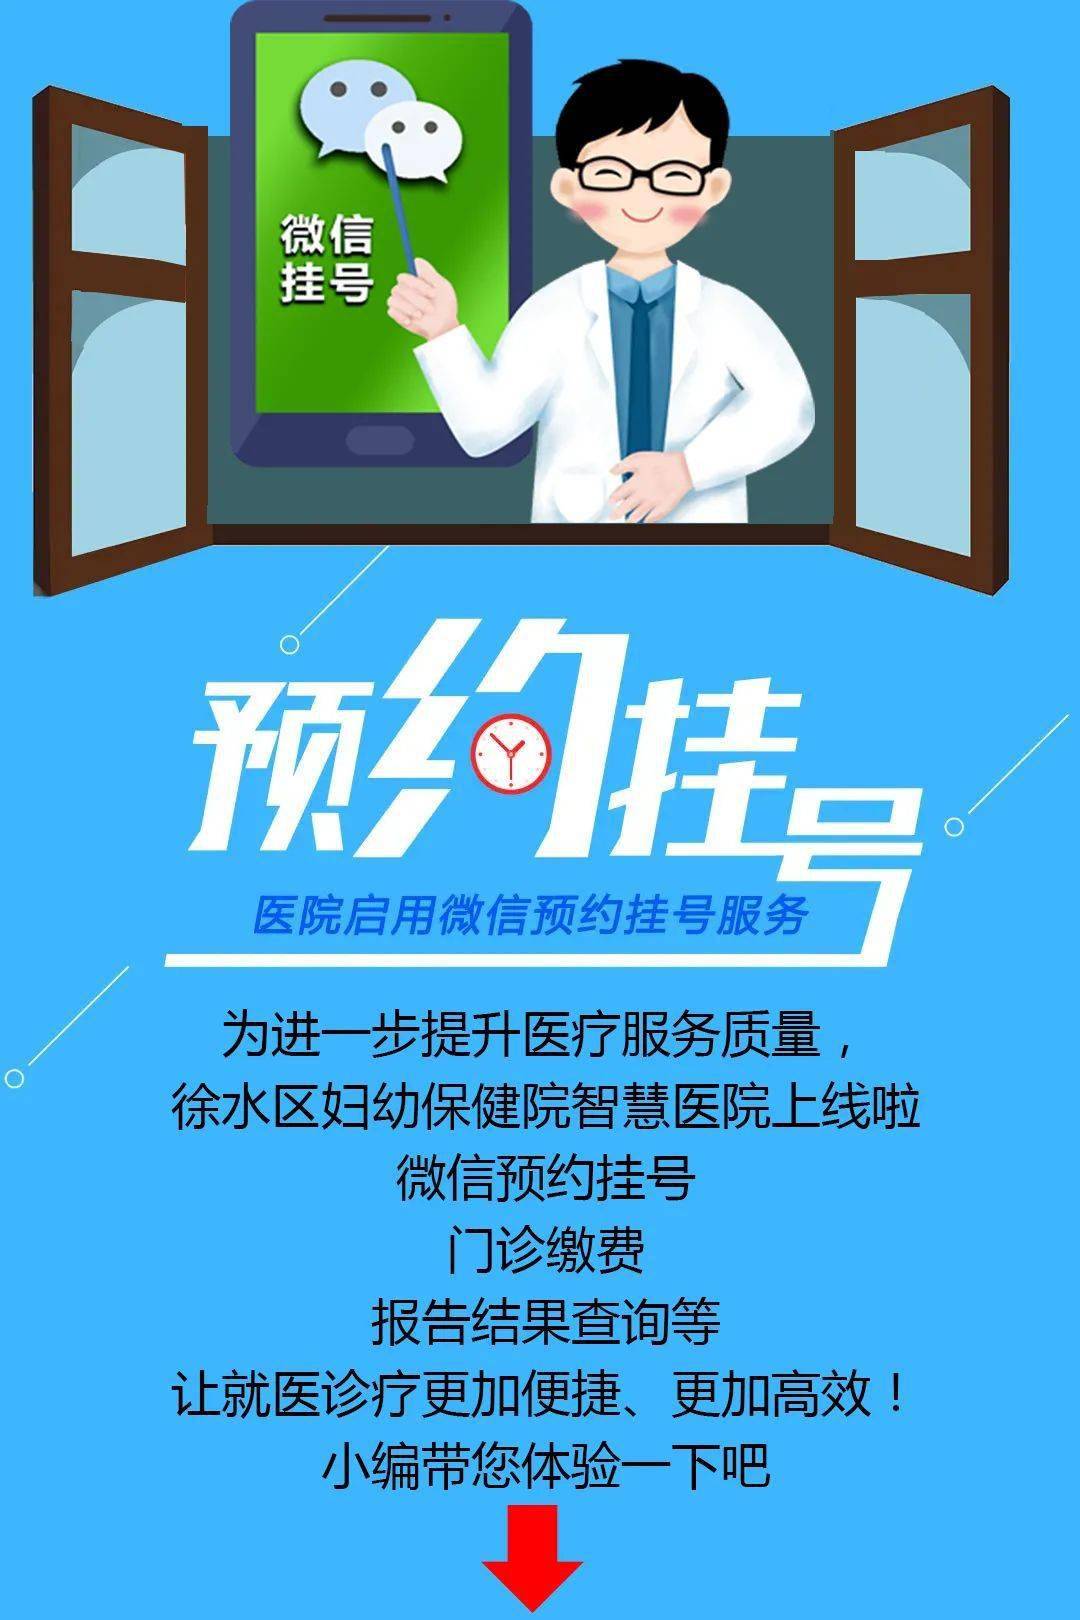 包含广州市红十字会医院昌岗分院医院号贩子挂号，助您医路轻松的词条